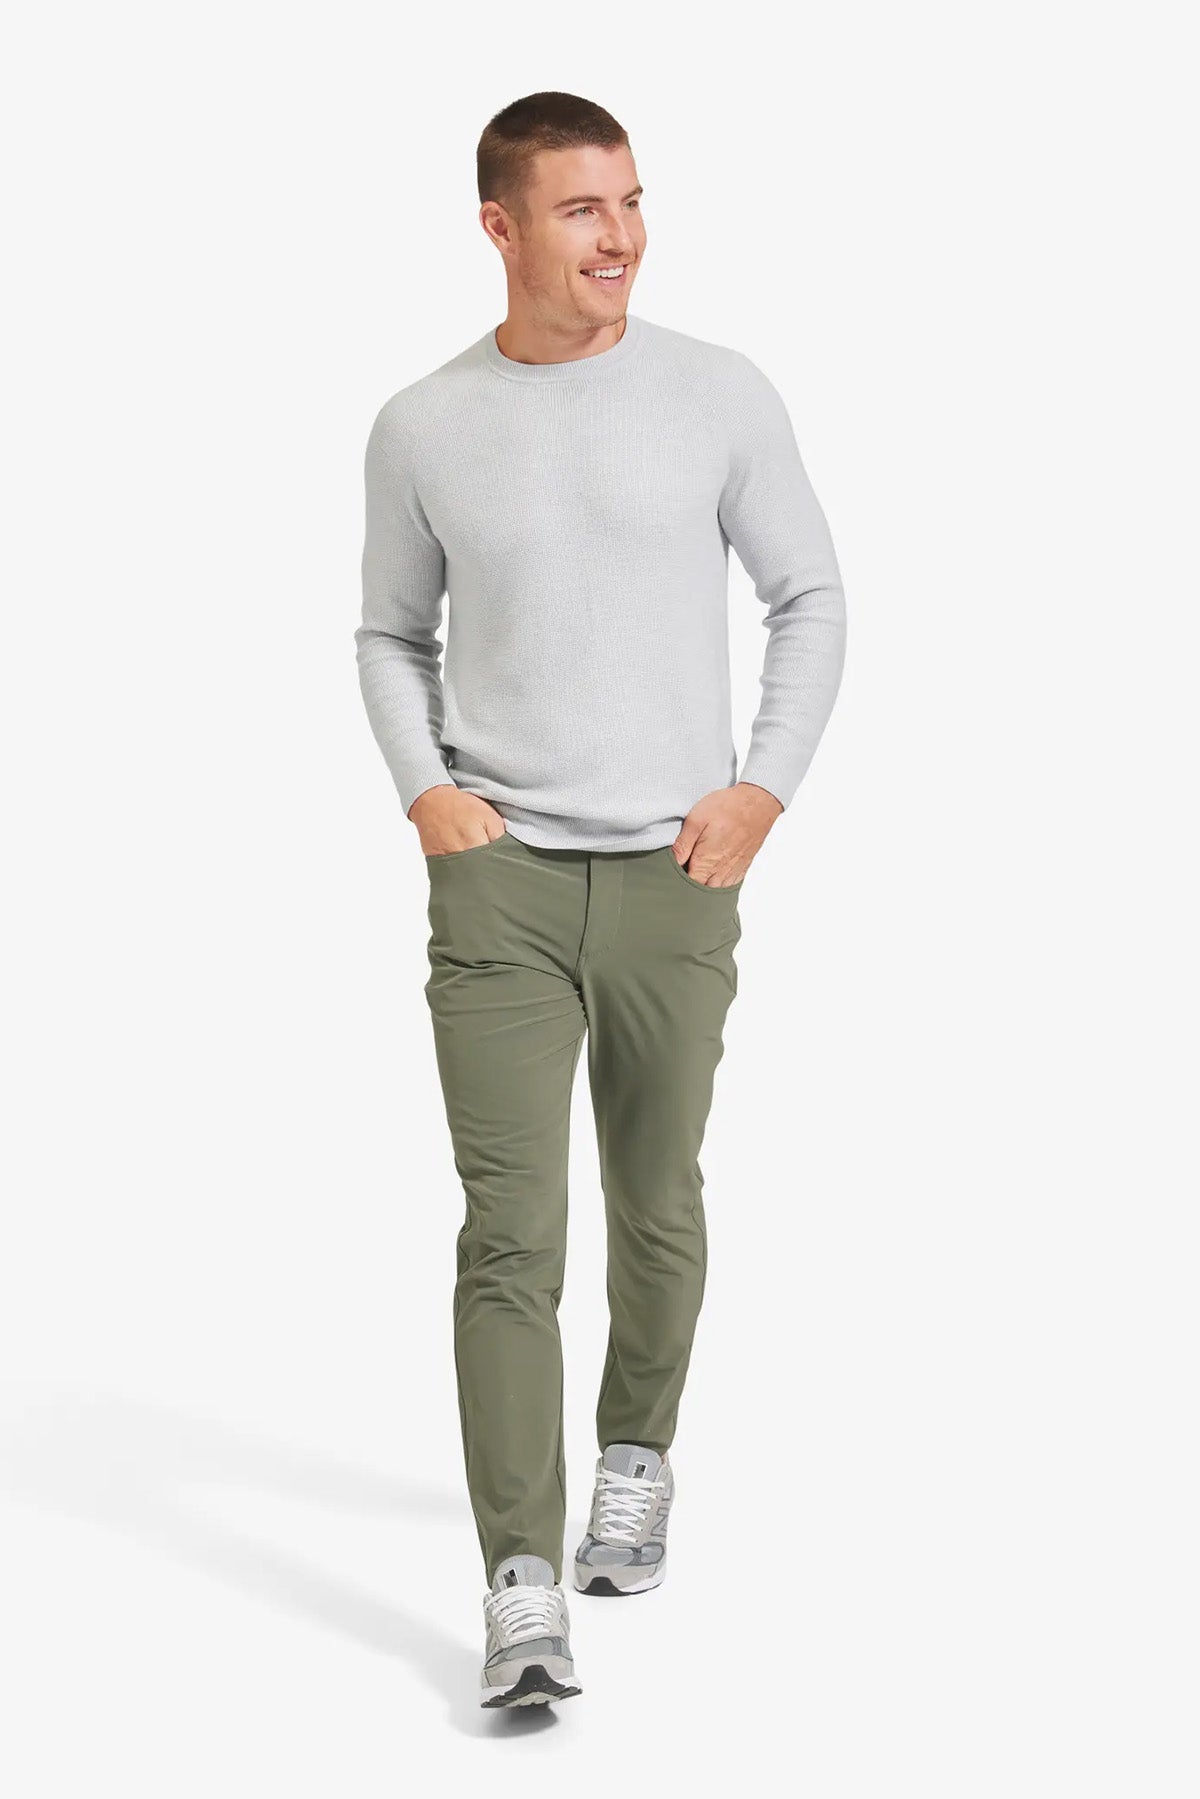 Mizzen + Main - Cassady Crewneck Sweater - Light Gray Solid - Front